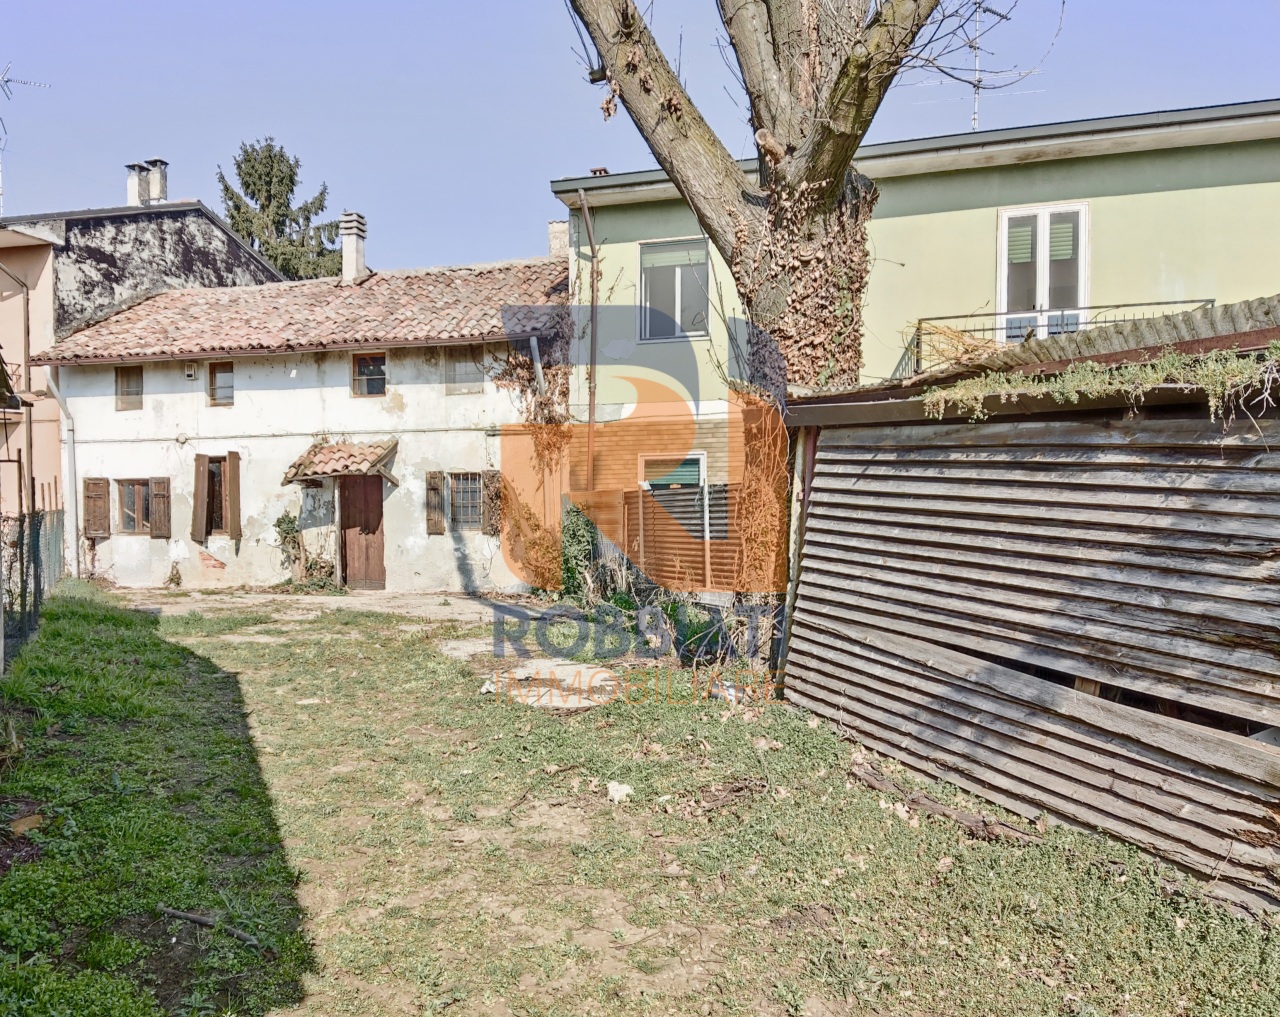 Villa a Schiera in vendita a Zinasco, 4 locali, prezzo € 17.000 | PortaleAgenzieImmobiliari.it